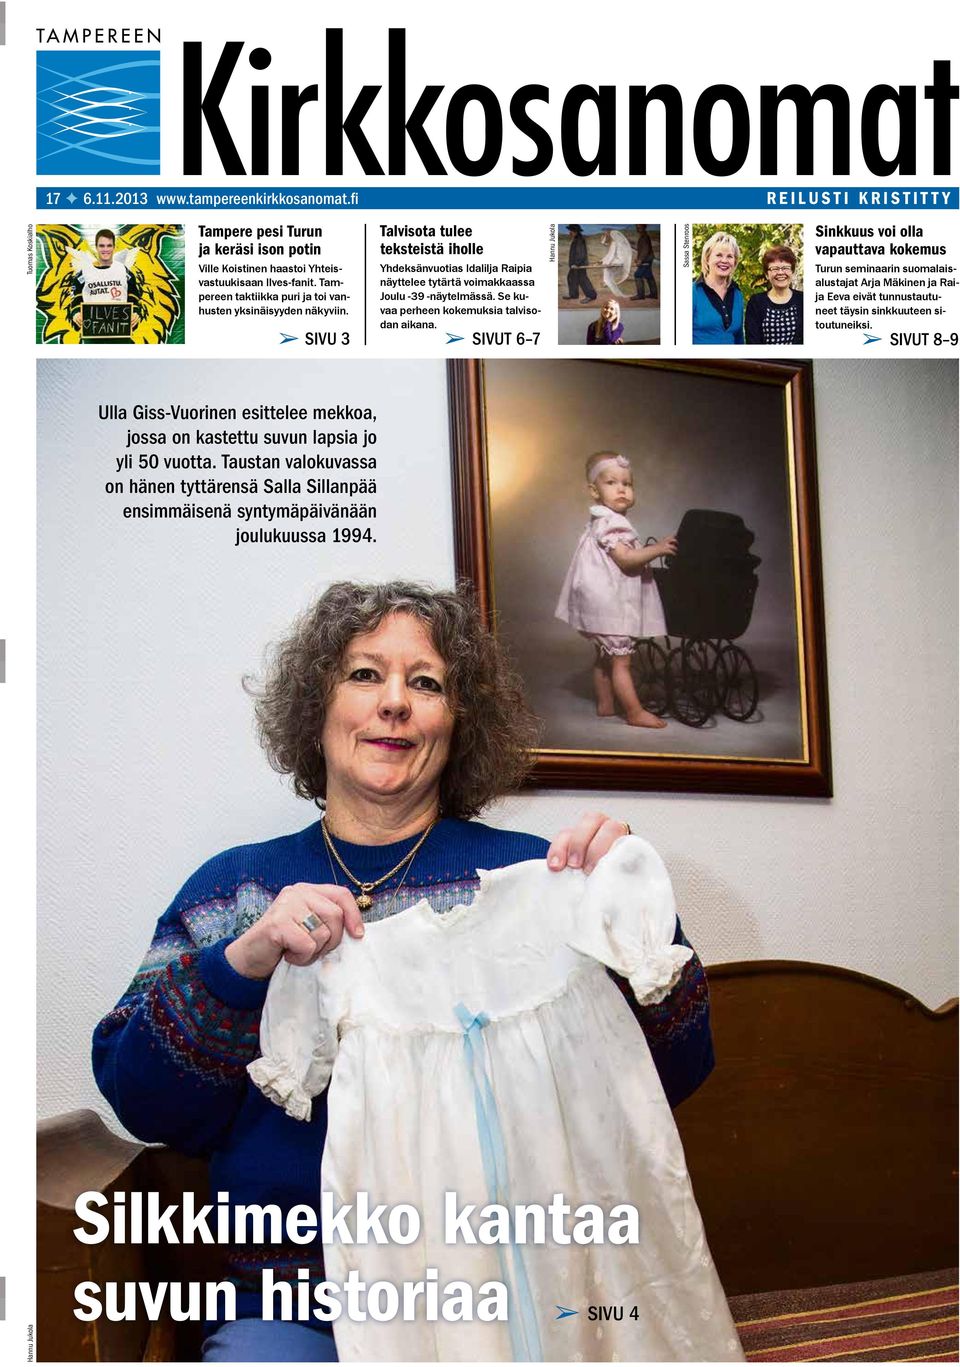 Taustan valokuvassa on hänen tyttärensä Salla Sillanpää ensimmäisenä syntymäpäivänään joulukuussa 1994.